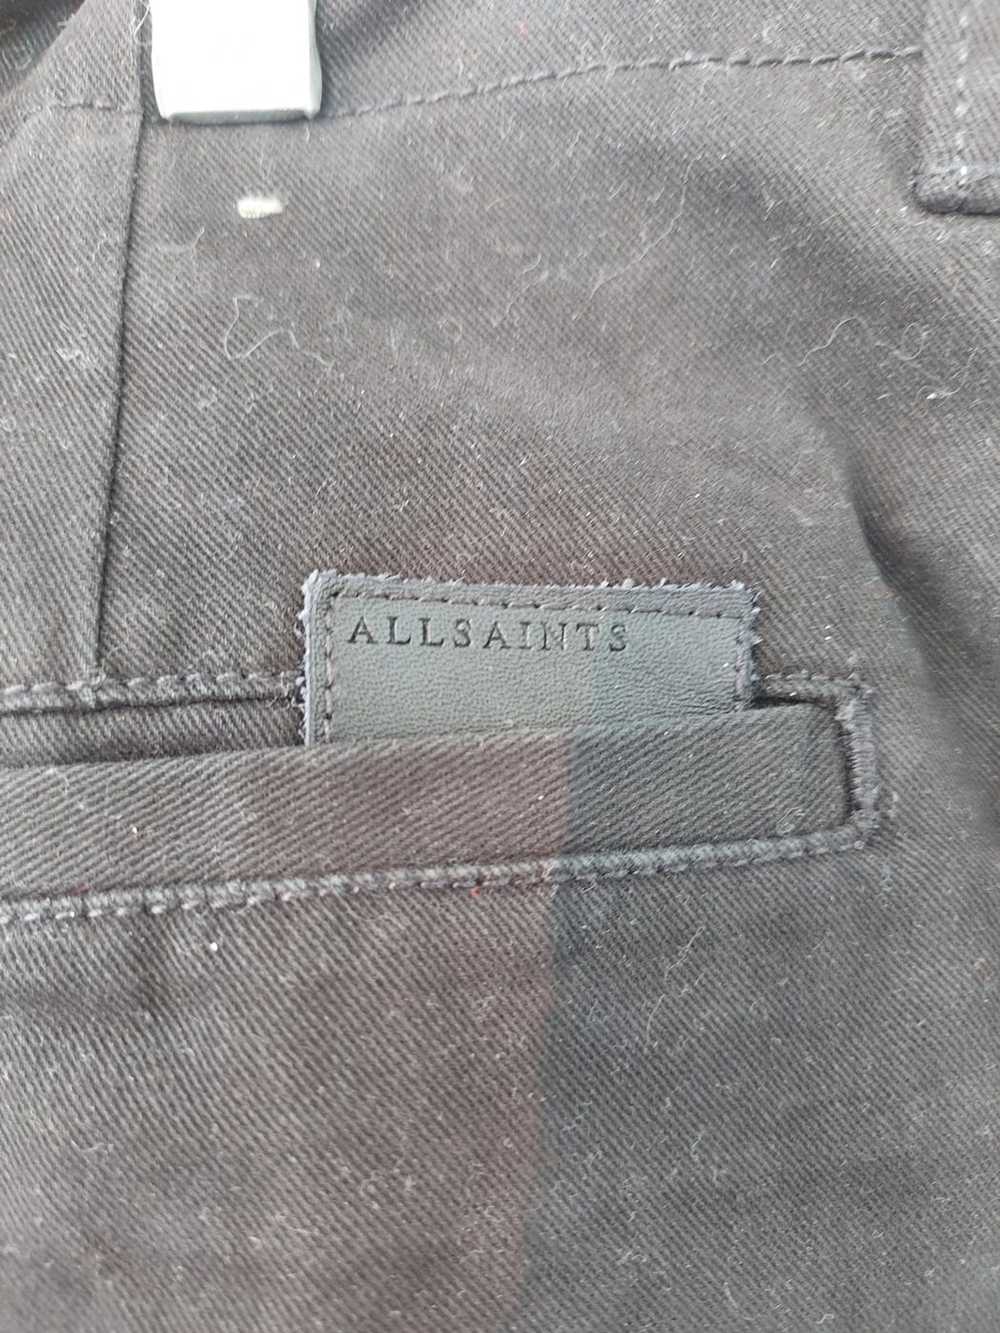 Allsaints ALLSAINTS PANTS 34 - image 7